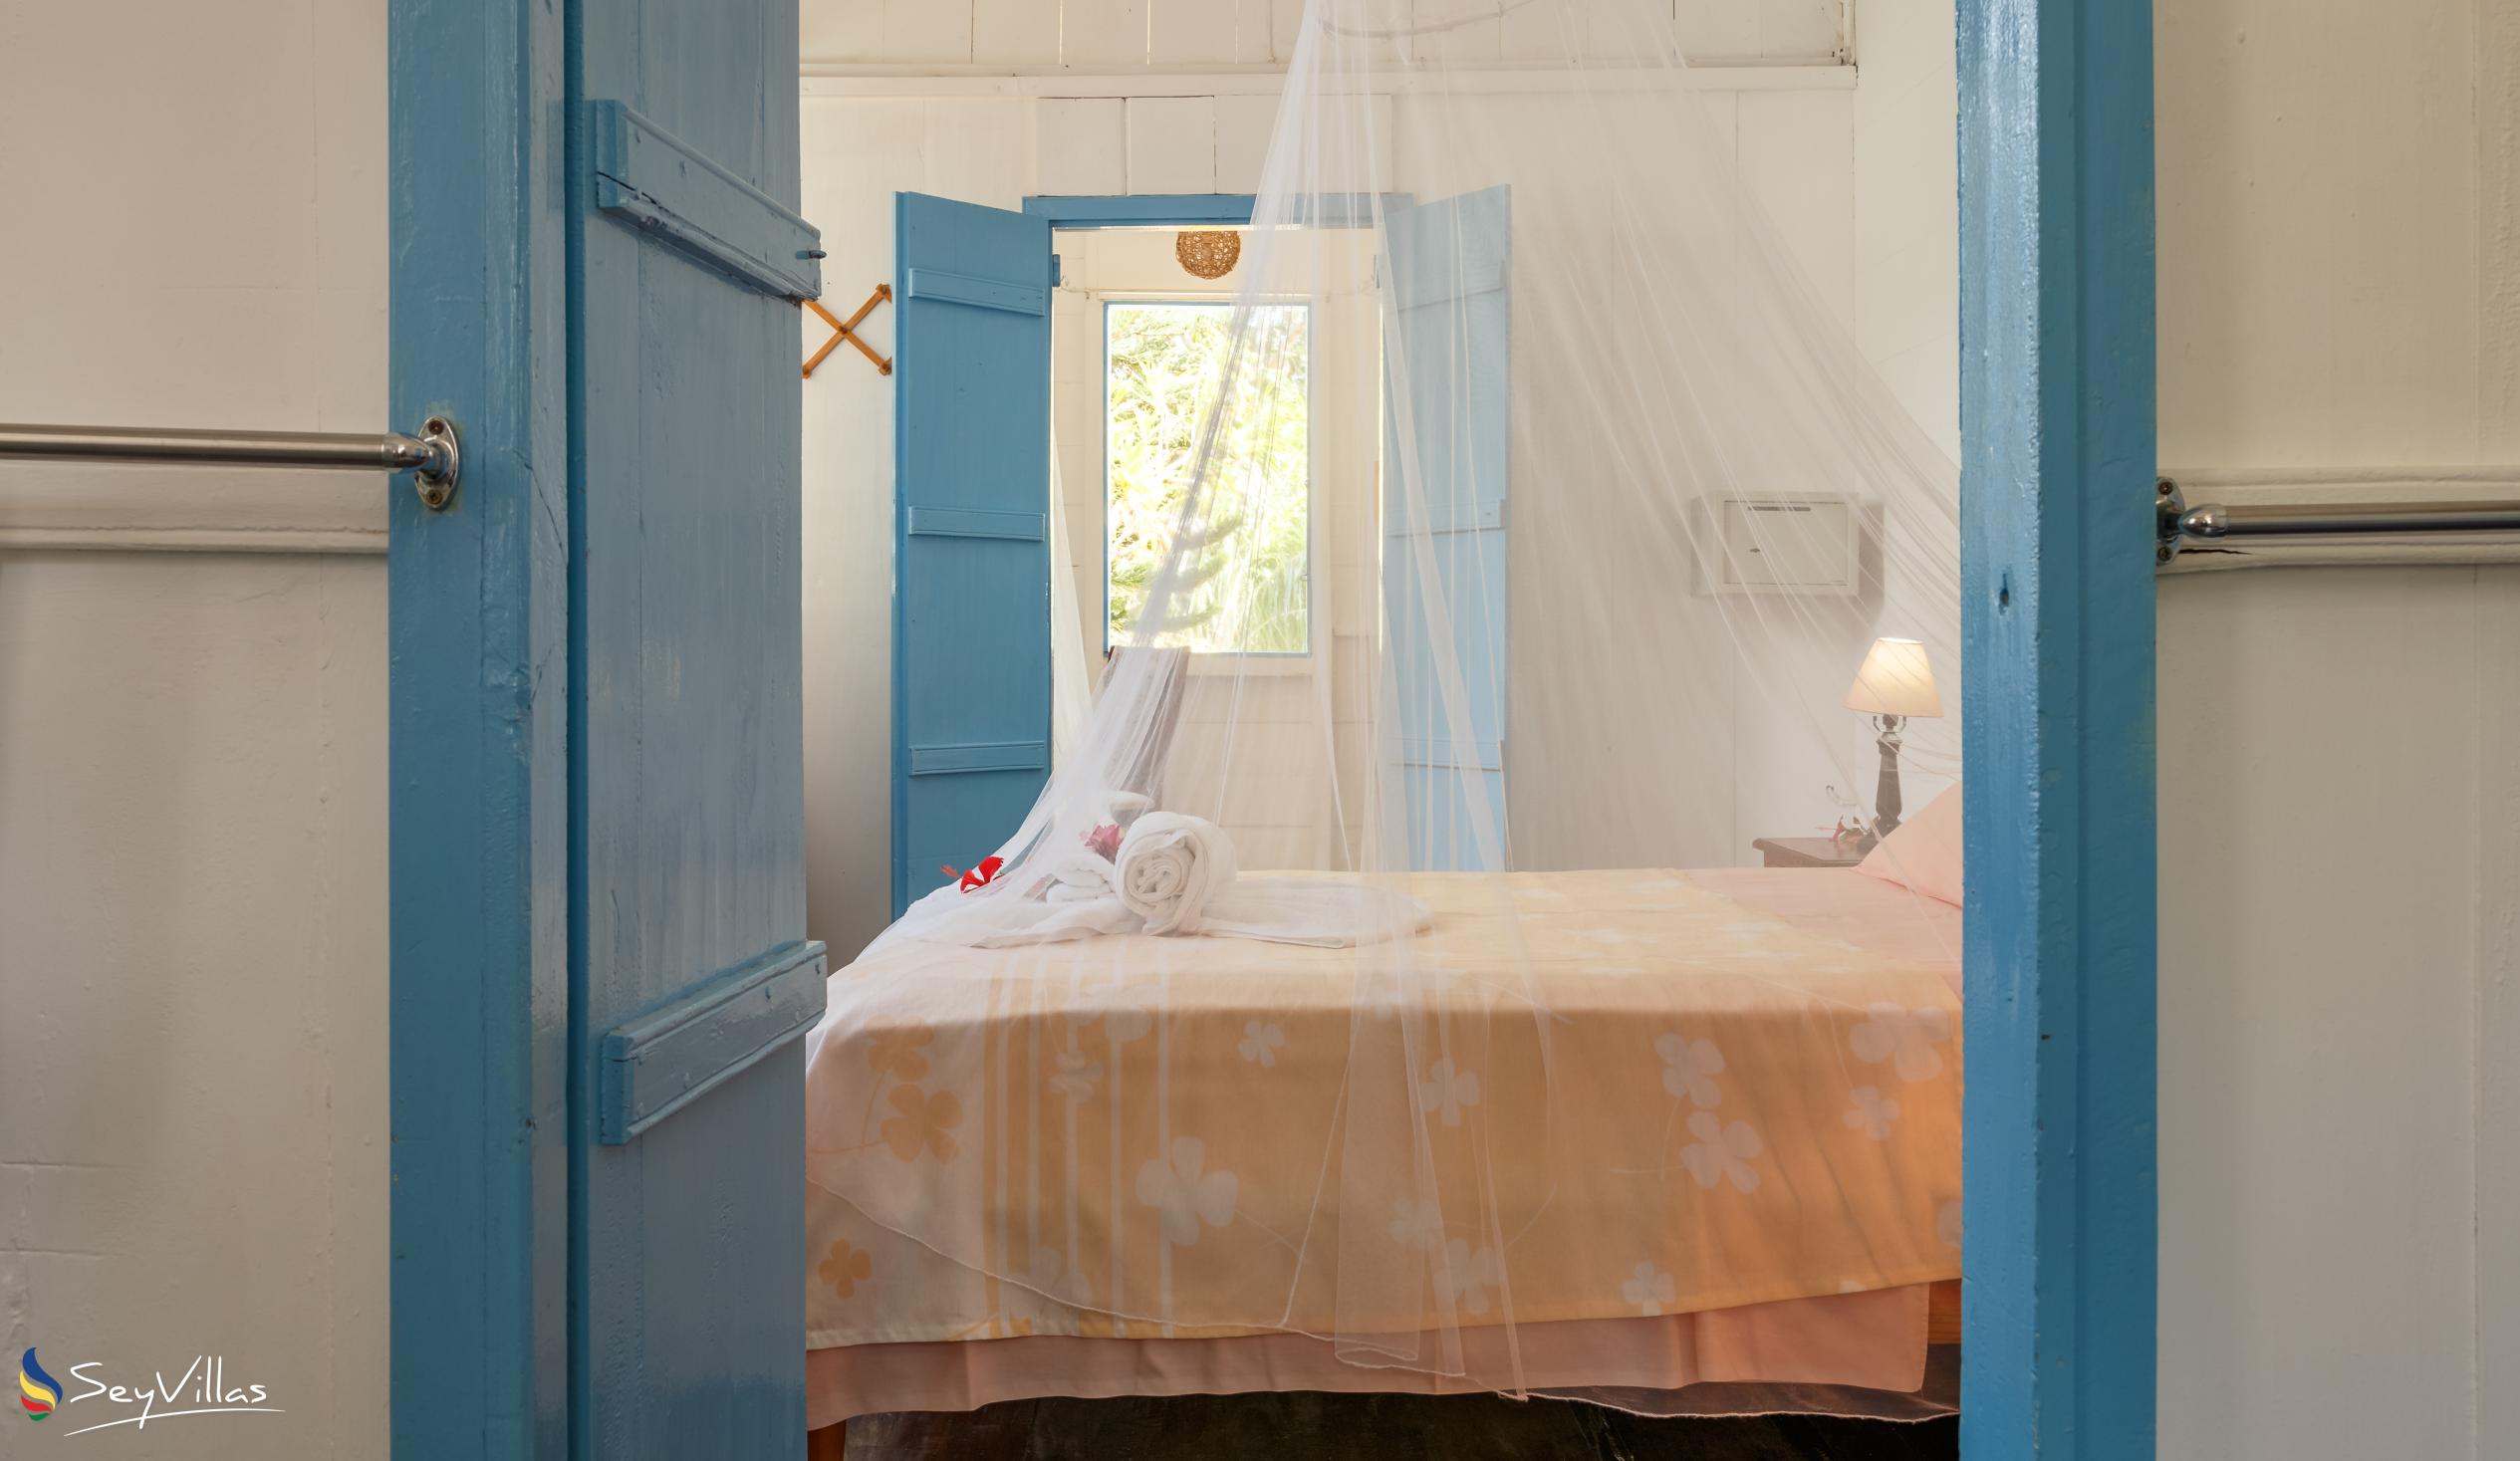 Foto 89: The Beach House (Chateau Martha) - Maison de vacances avec 1 chambre à coucher - Mahé (Seychelles)